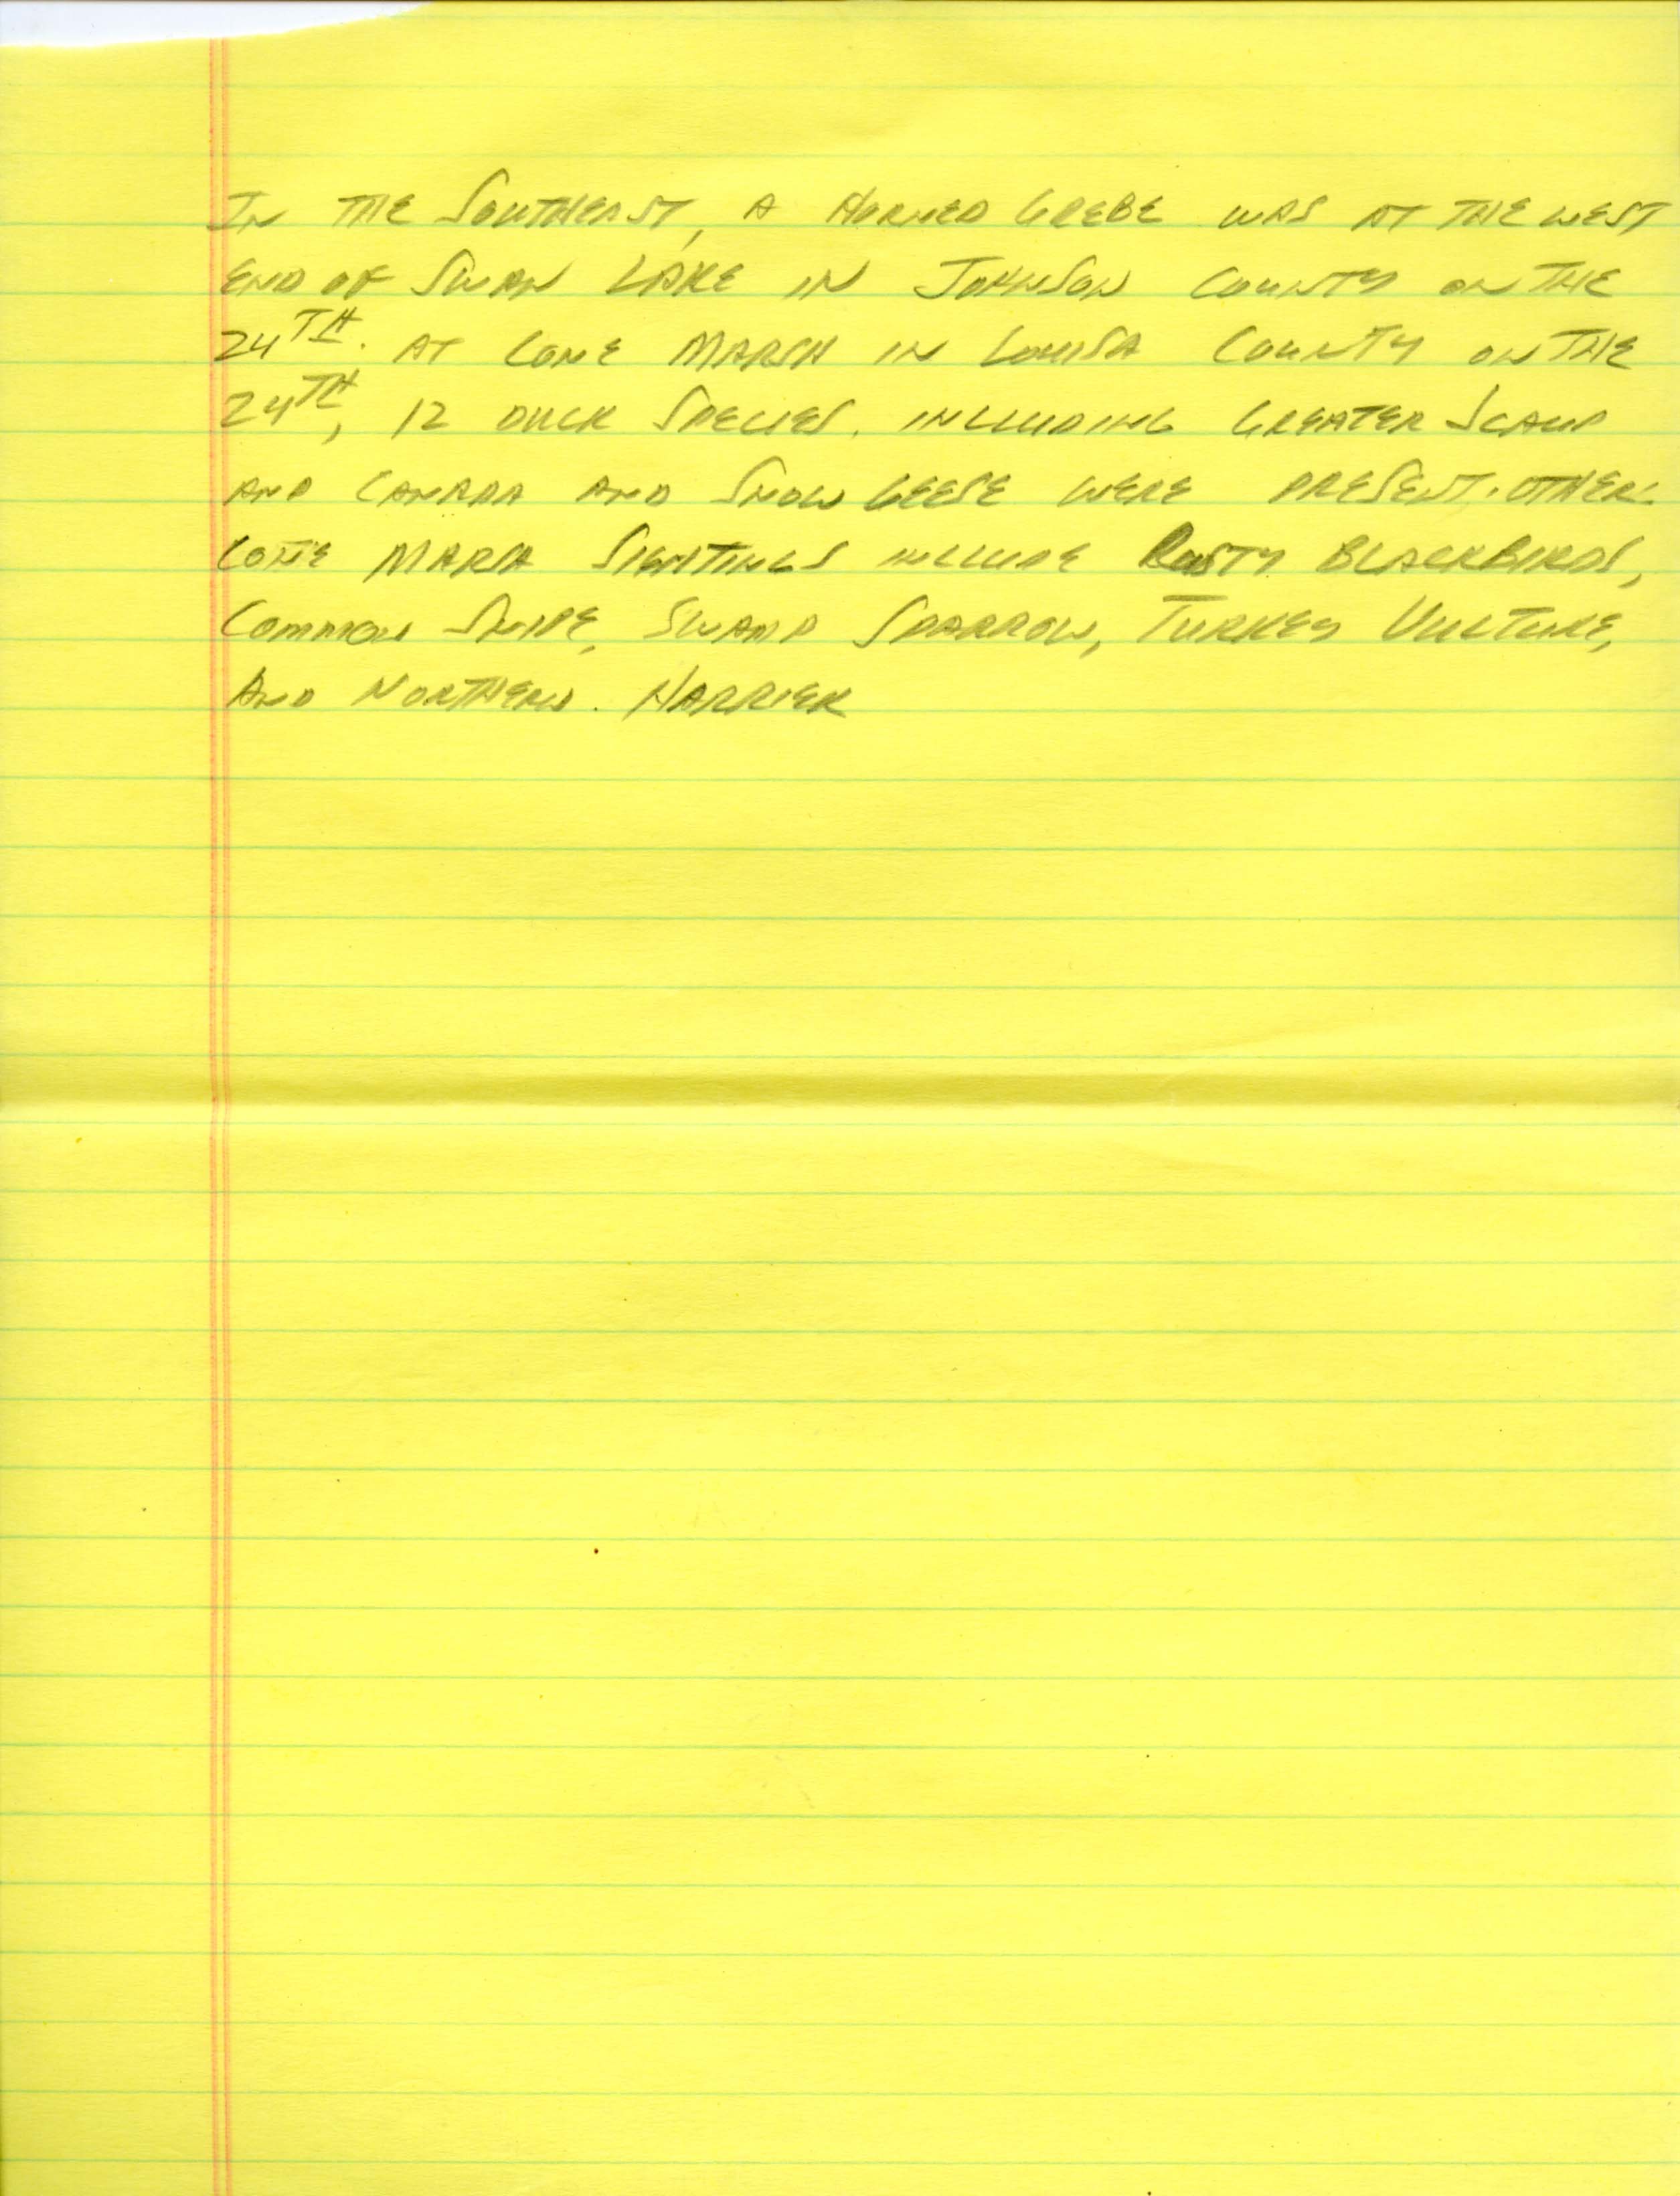 Iowa Birdline update, March 25, 1991 notes